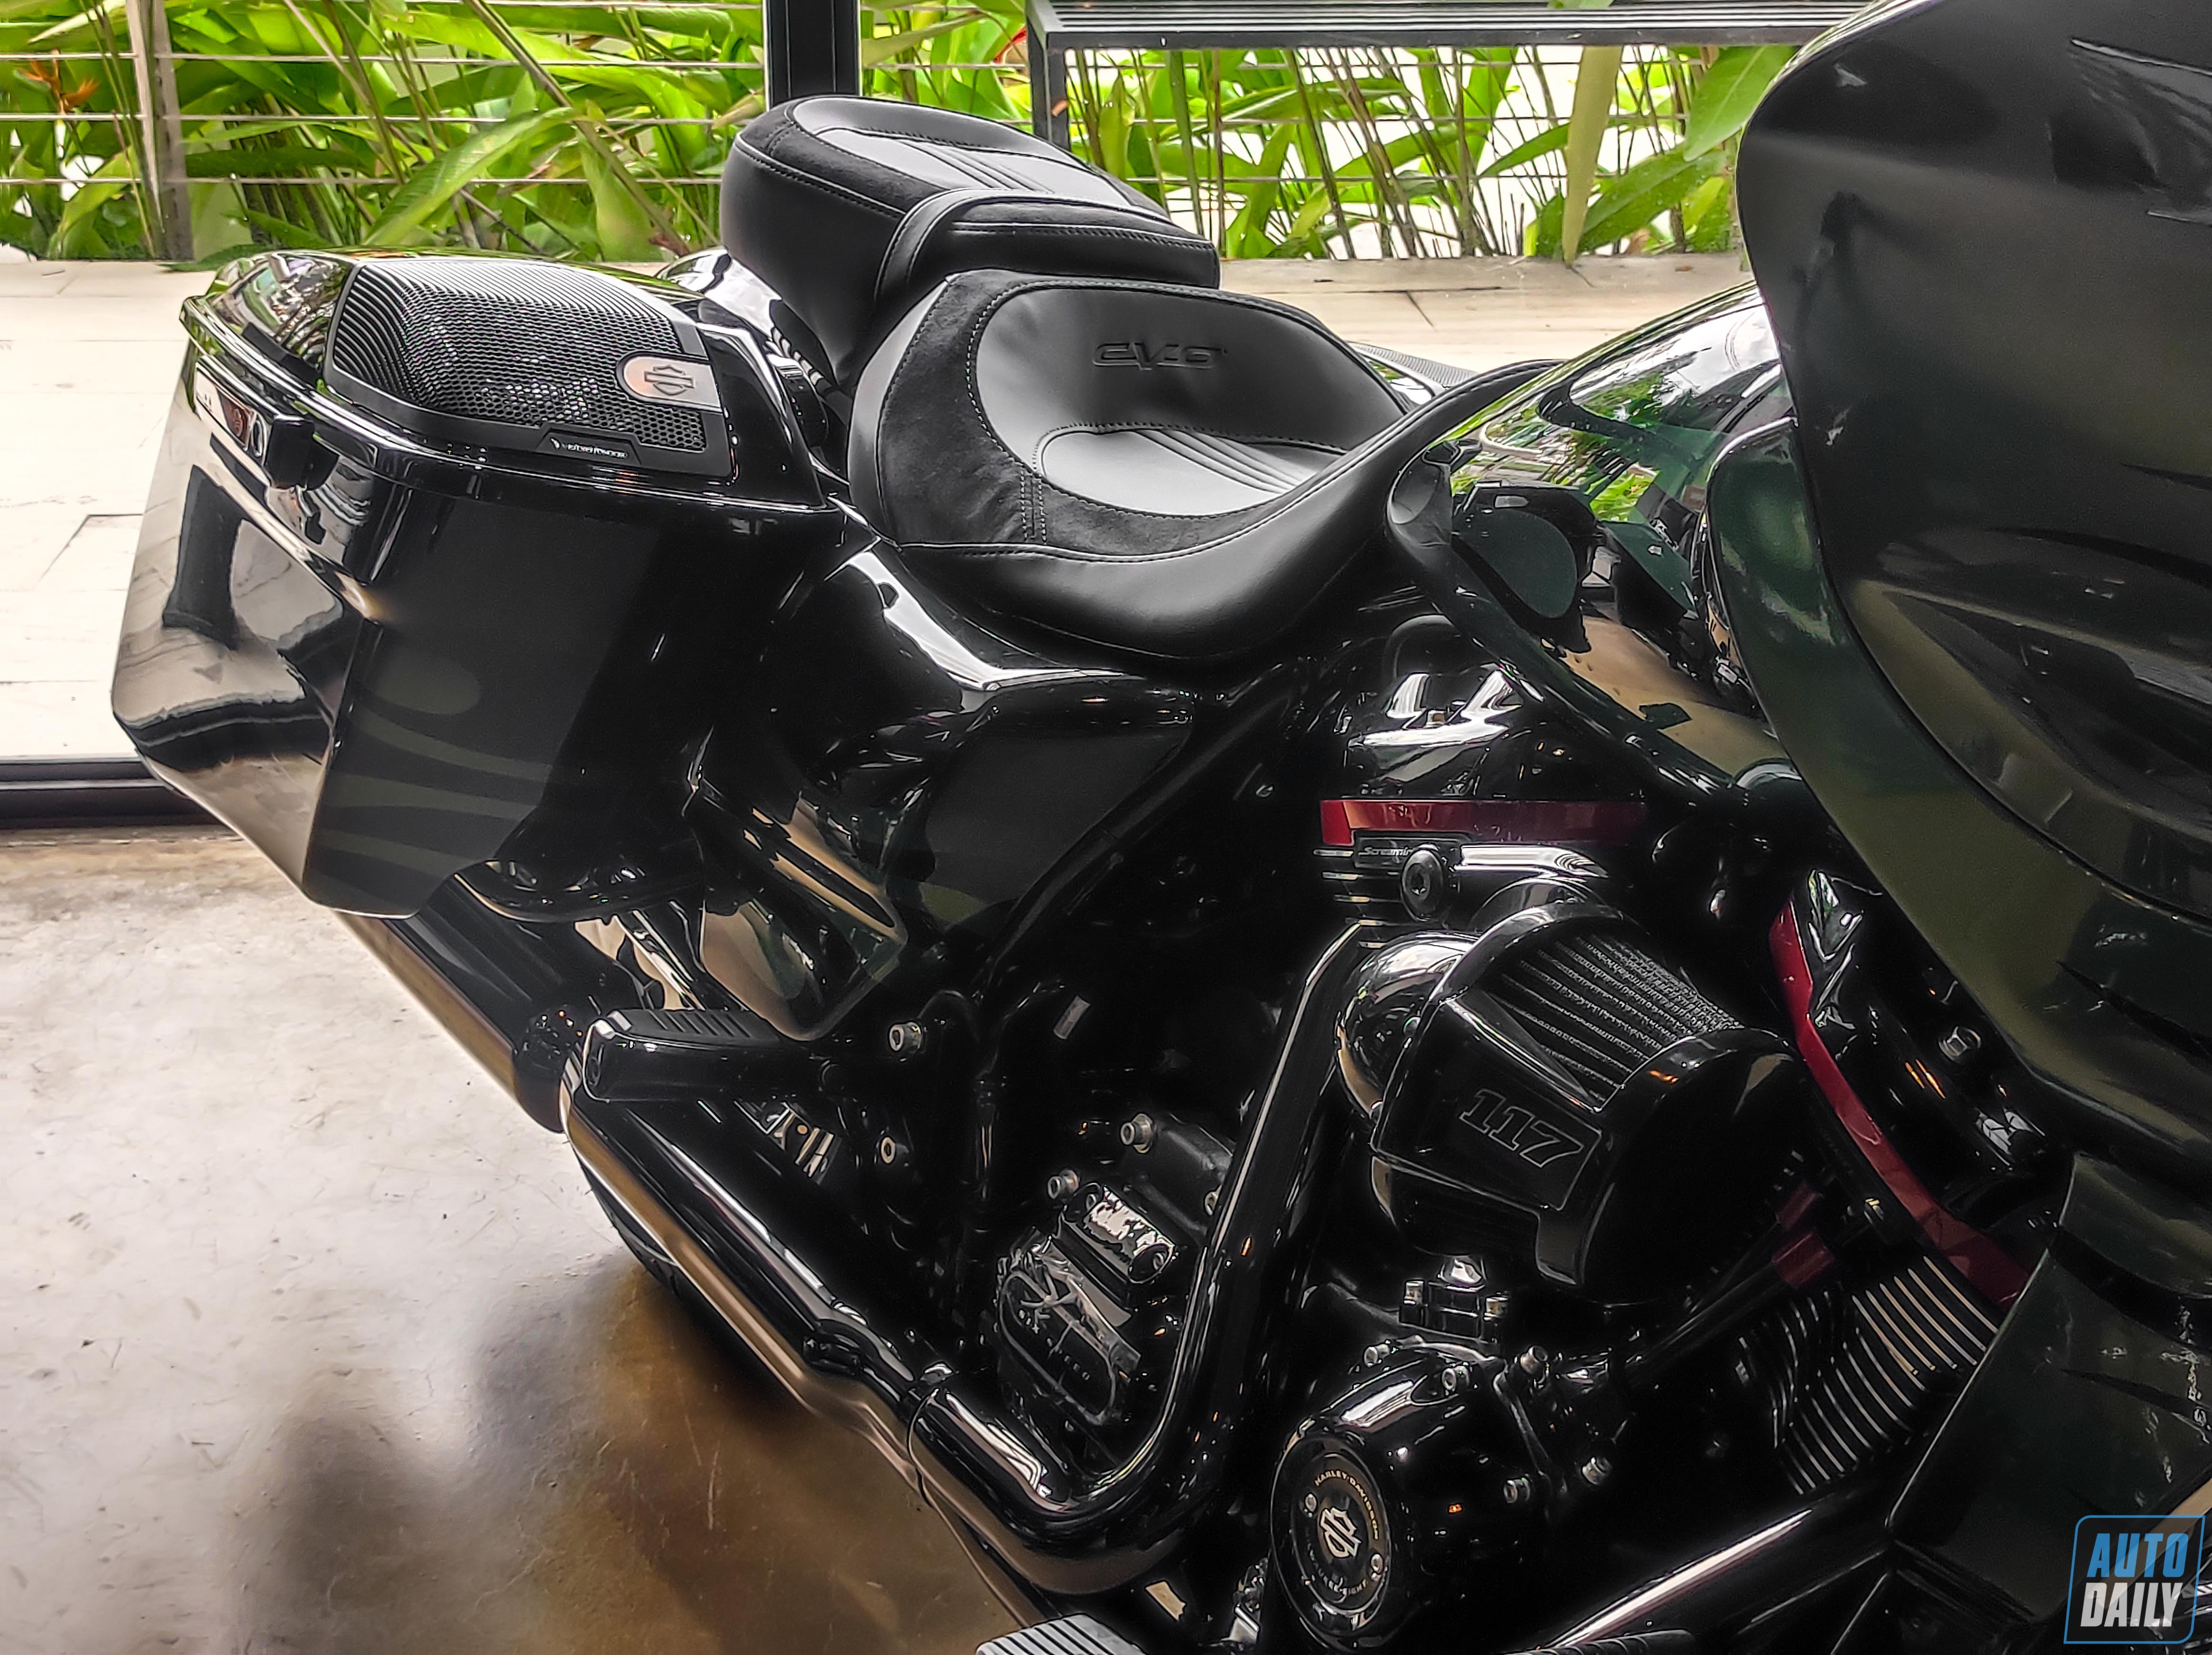 Chi tiết Harley-Davidson CVO Road Glide có giá hơn 2 tỷ đồng tại Việt Nam Harley-Davidson CVO Road Glide (10).jpg